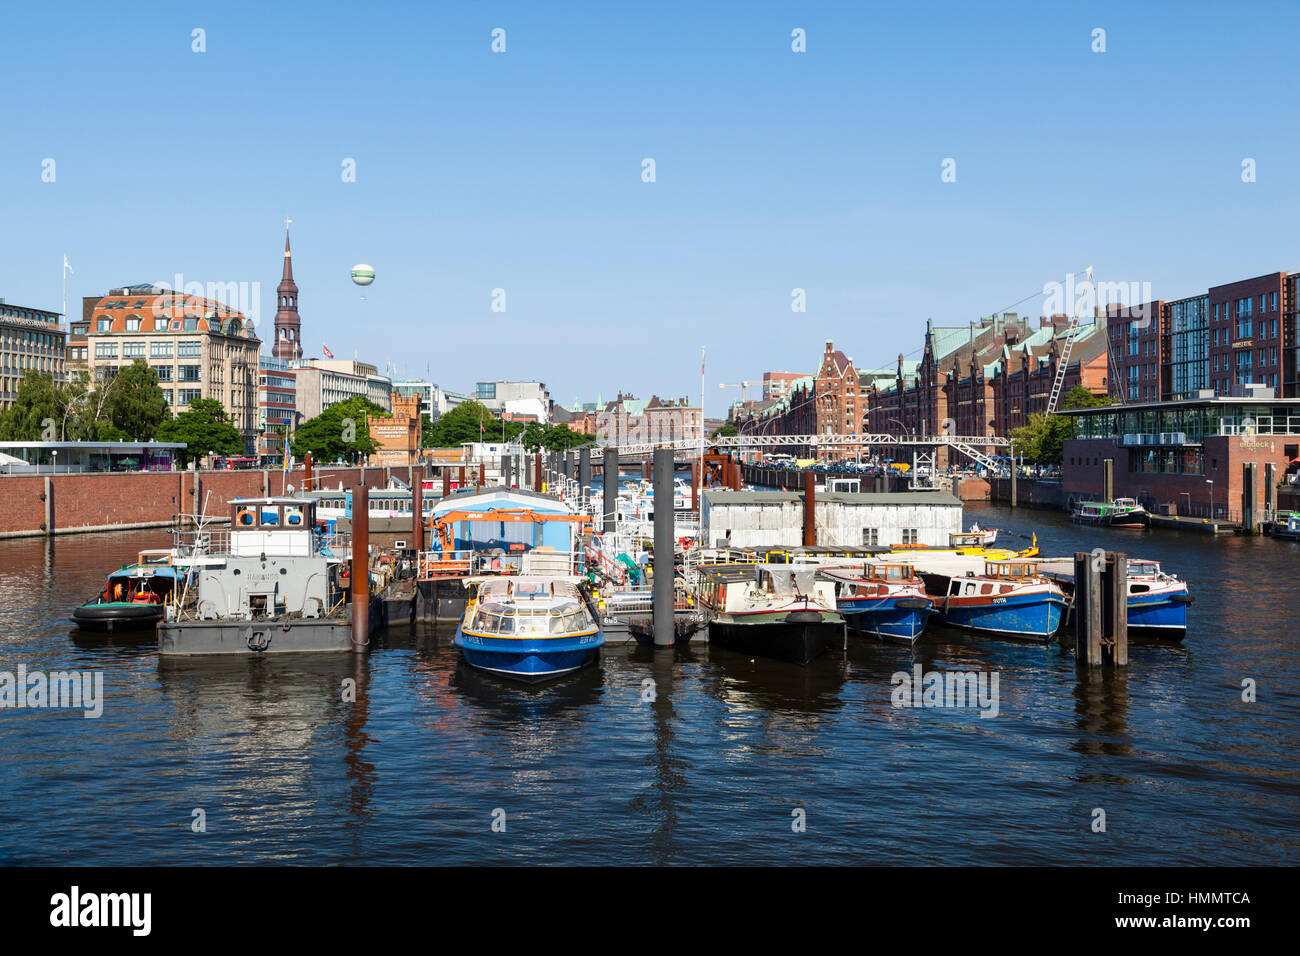 Hamburg, Deutschland - Juli 7: Binnenhafen (Inner Harbor) mit Booten in Hamburg, Deutschland am 7. Juli 2013 Stockfoto